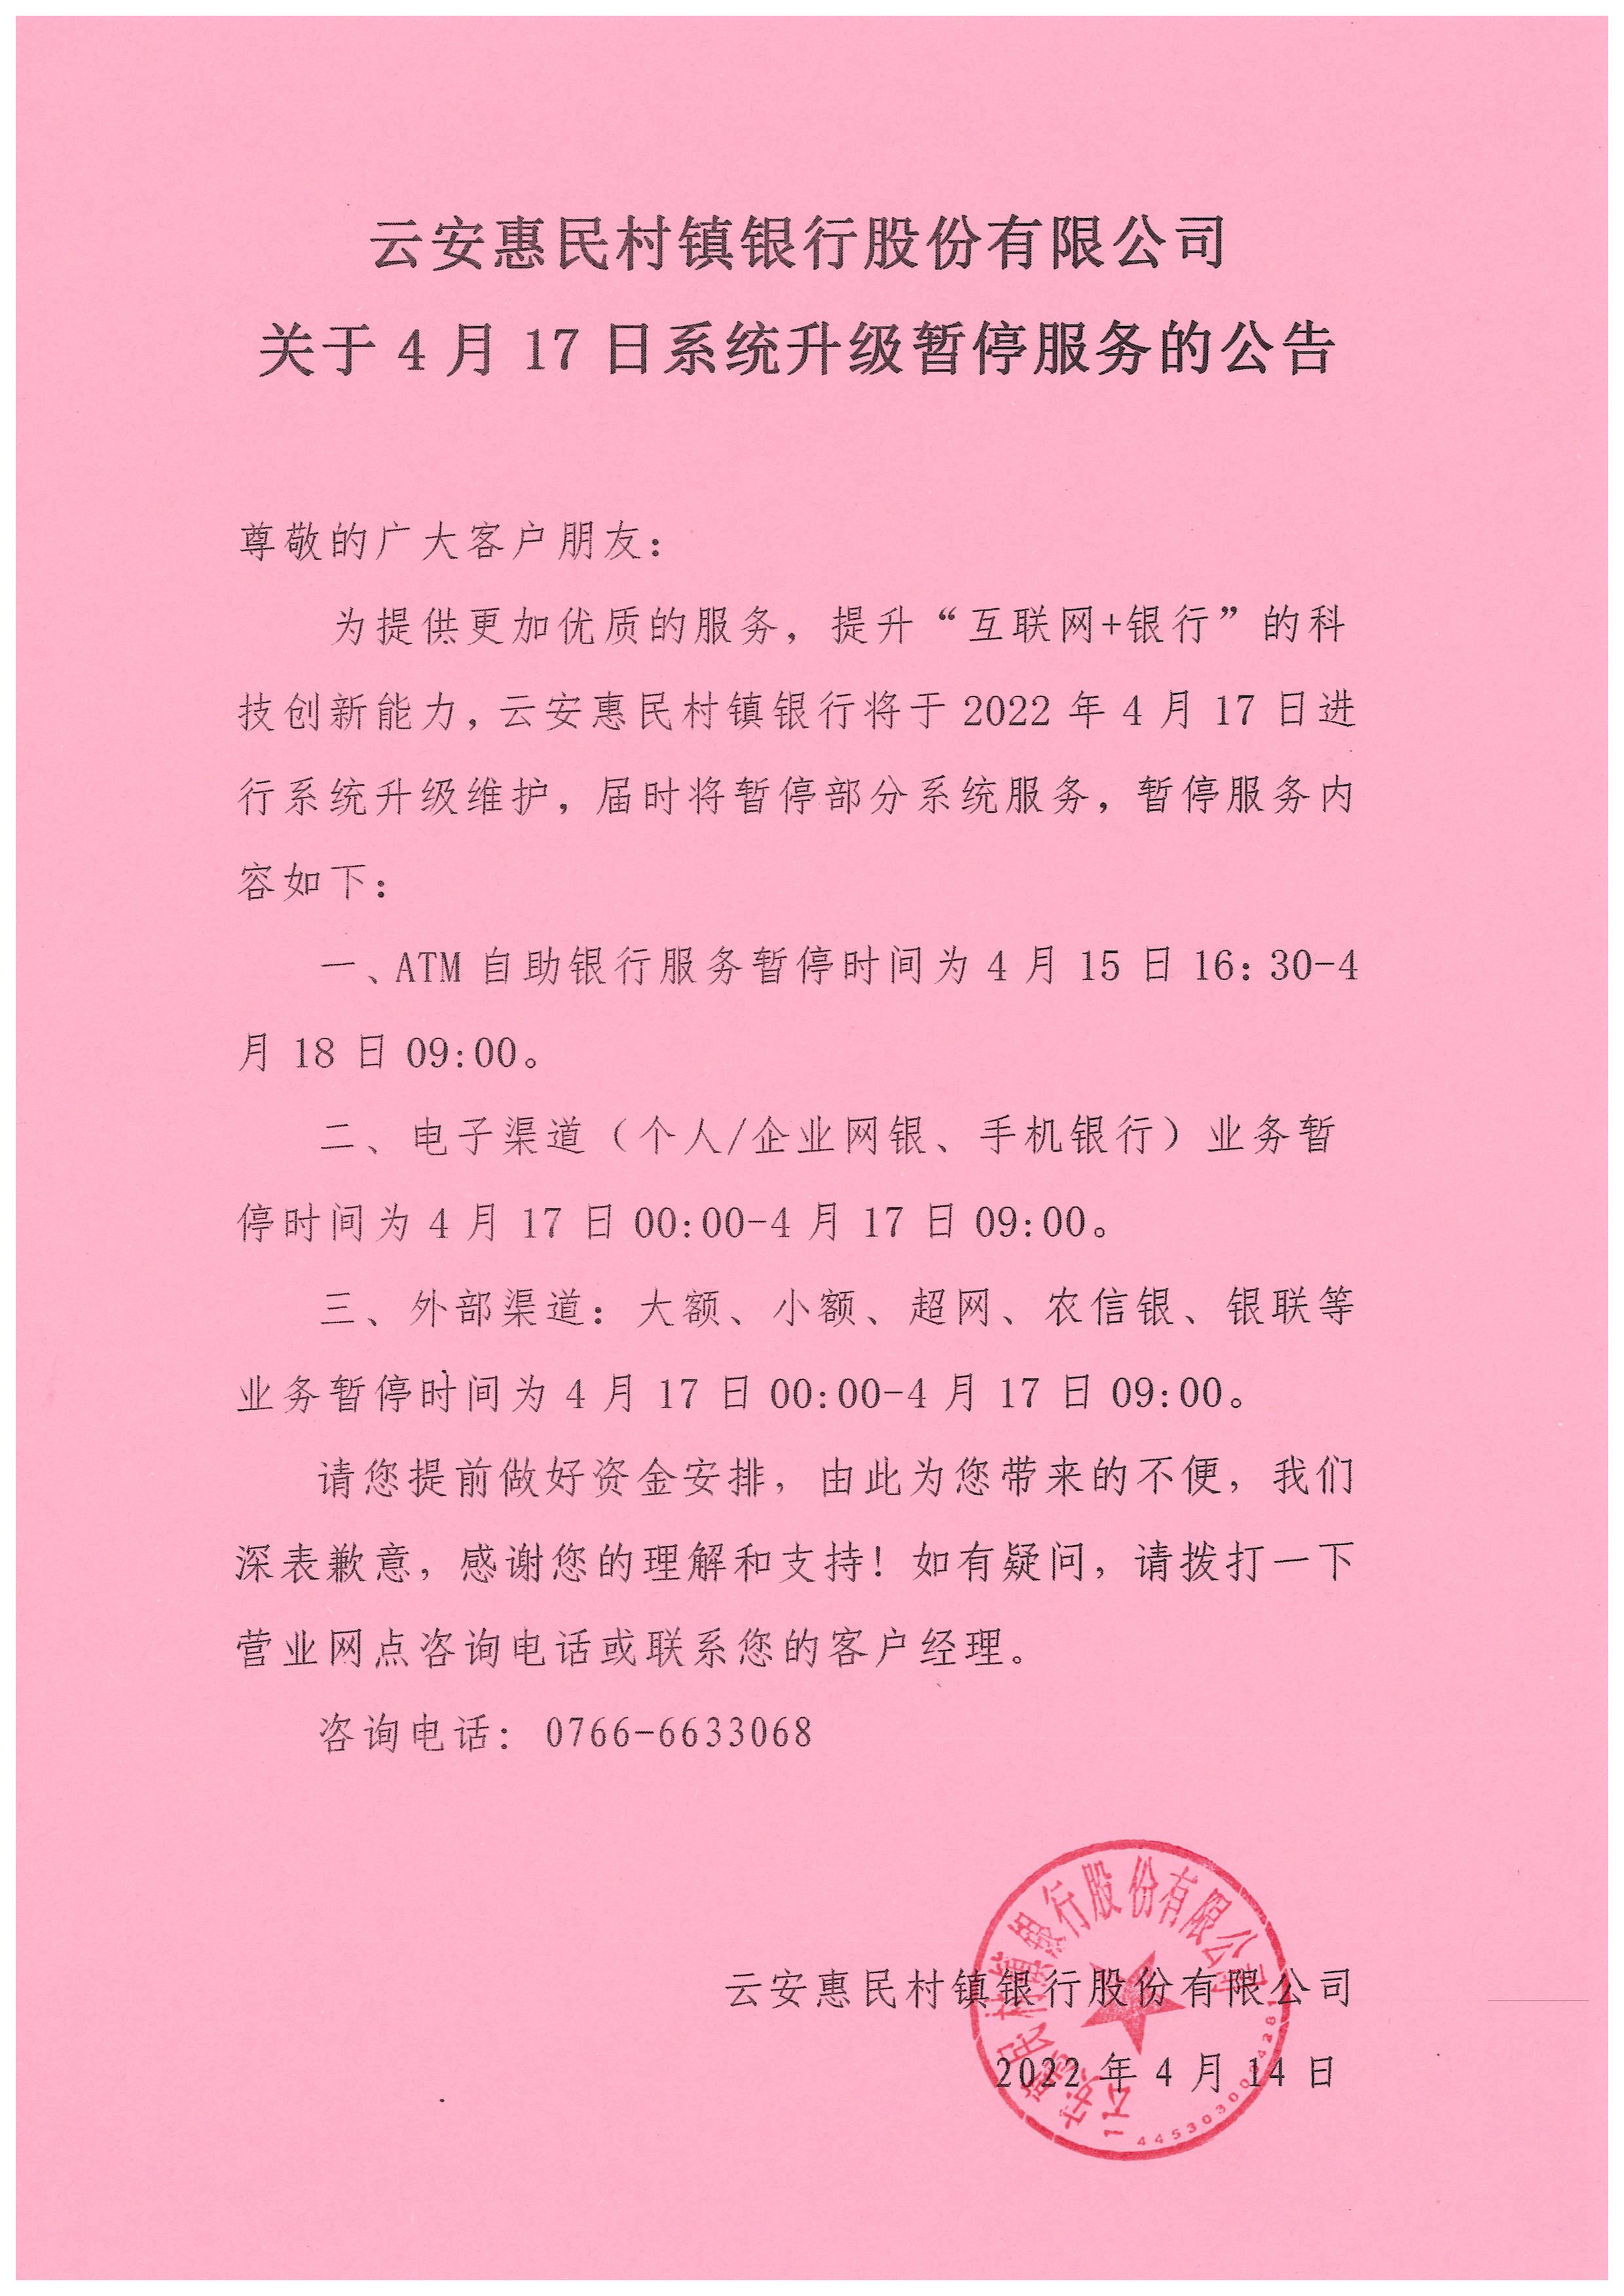 云安惠民村镇银行关于4月17日系统升级暂停服务的公告_1.jpg